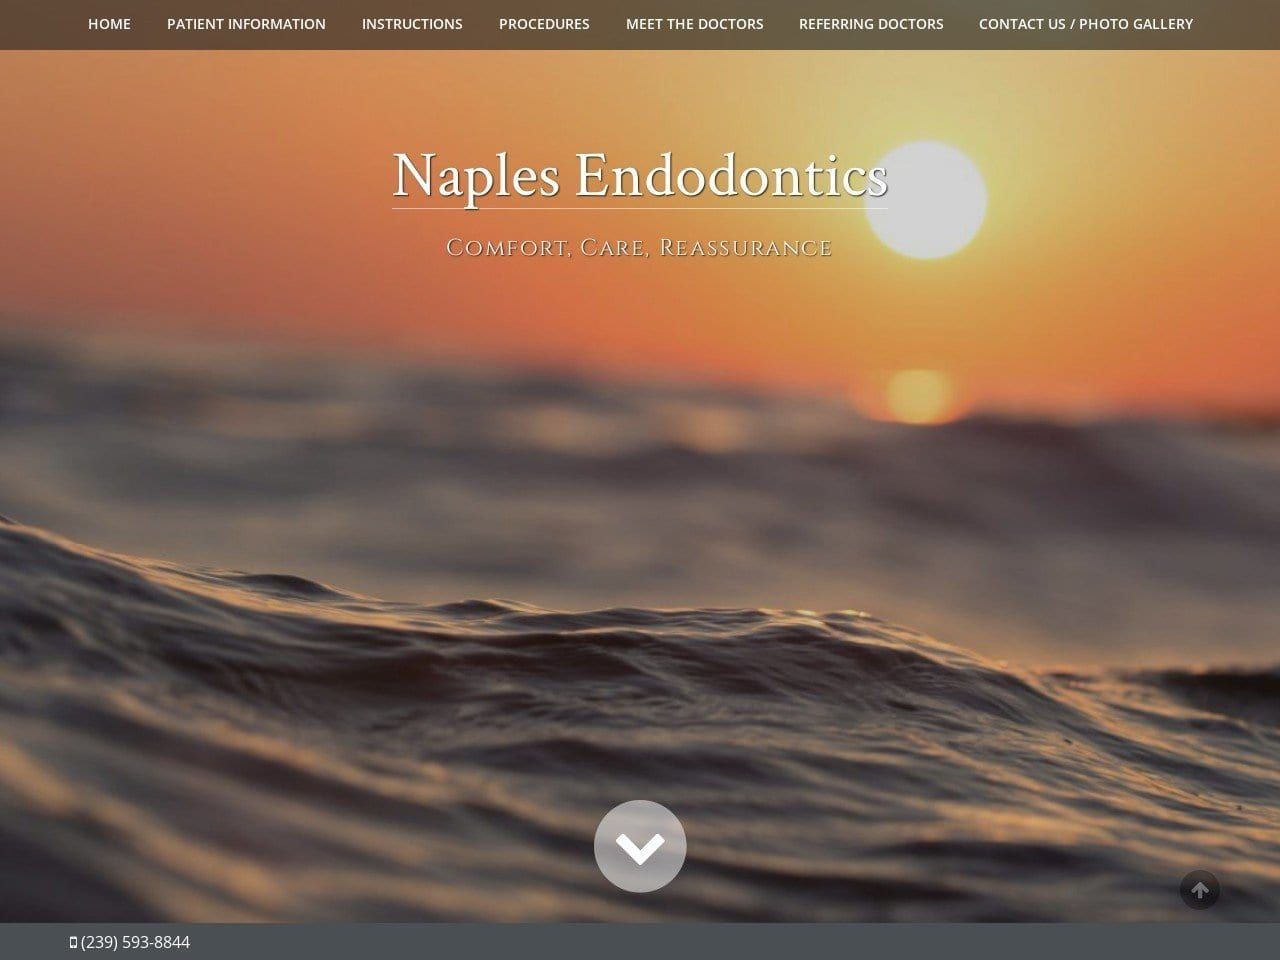 Naples Endodontics Website Screenshot from rootcanalnaples.com